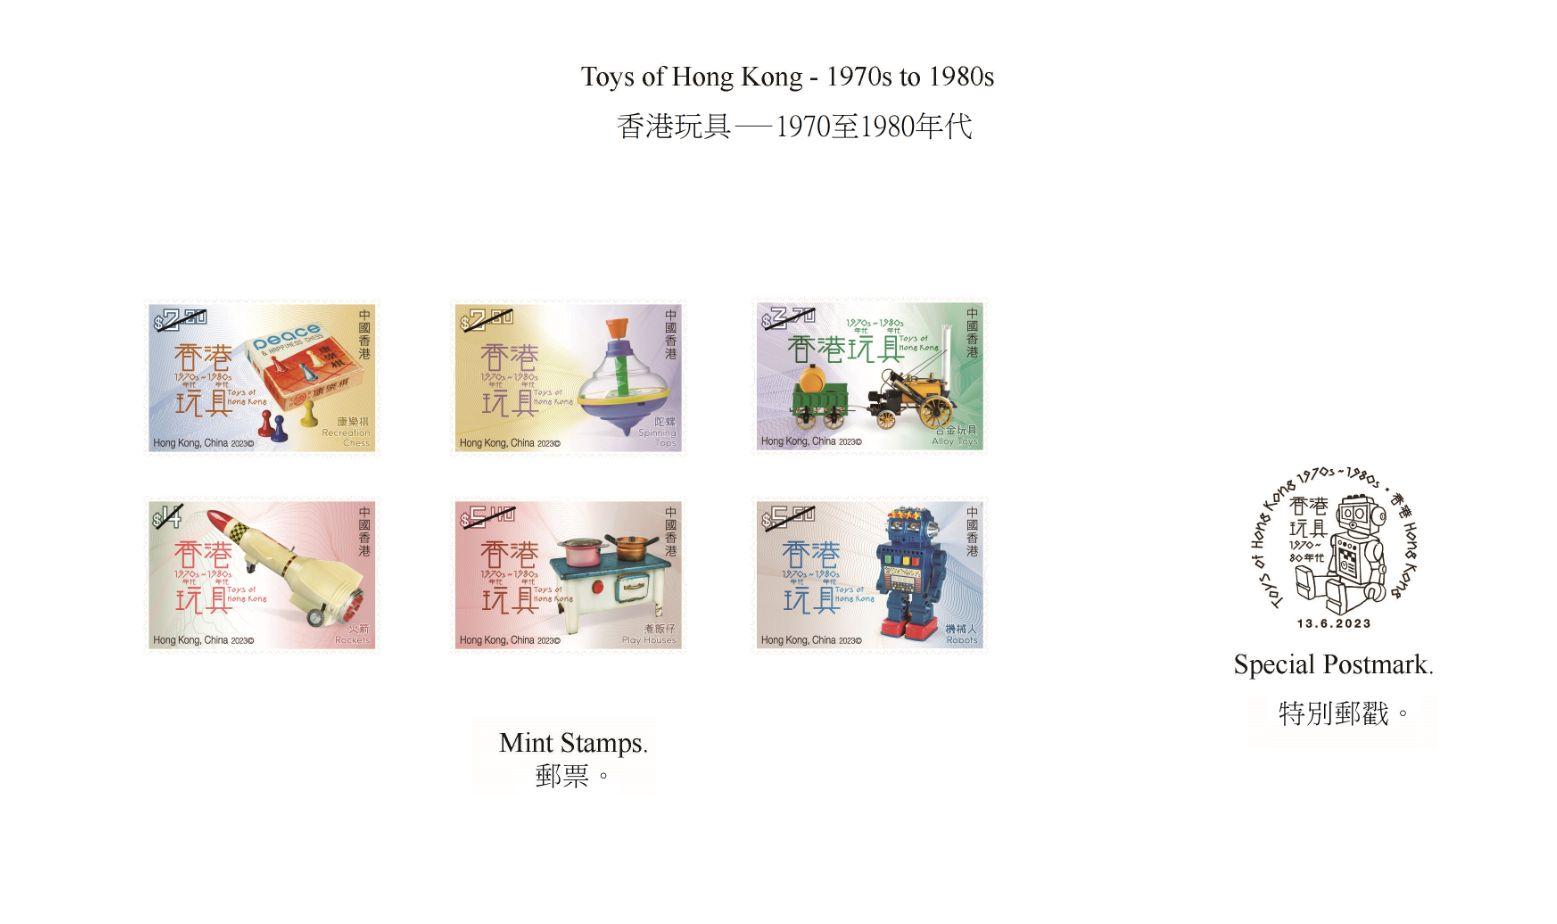 香港郵政六月十三日（星期二）發行以「香港玩具—1970至1980年代」為題的特別郵票及相關集郵品。圖示郵票和特別郵戳。